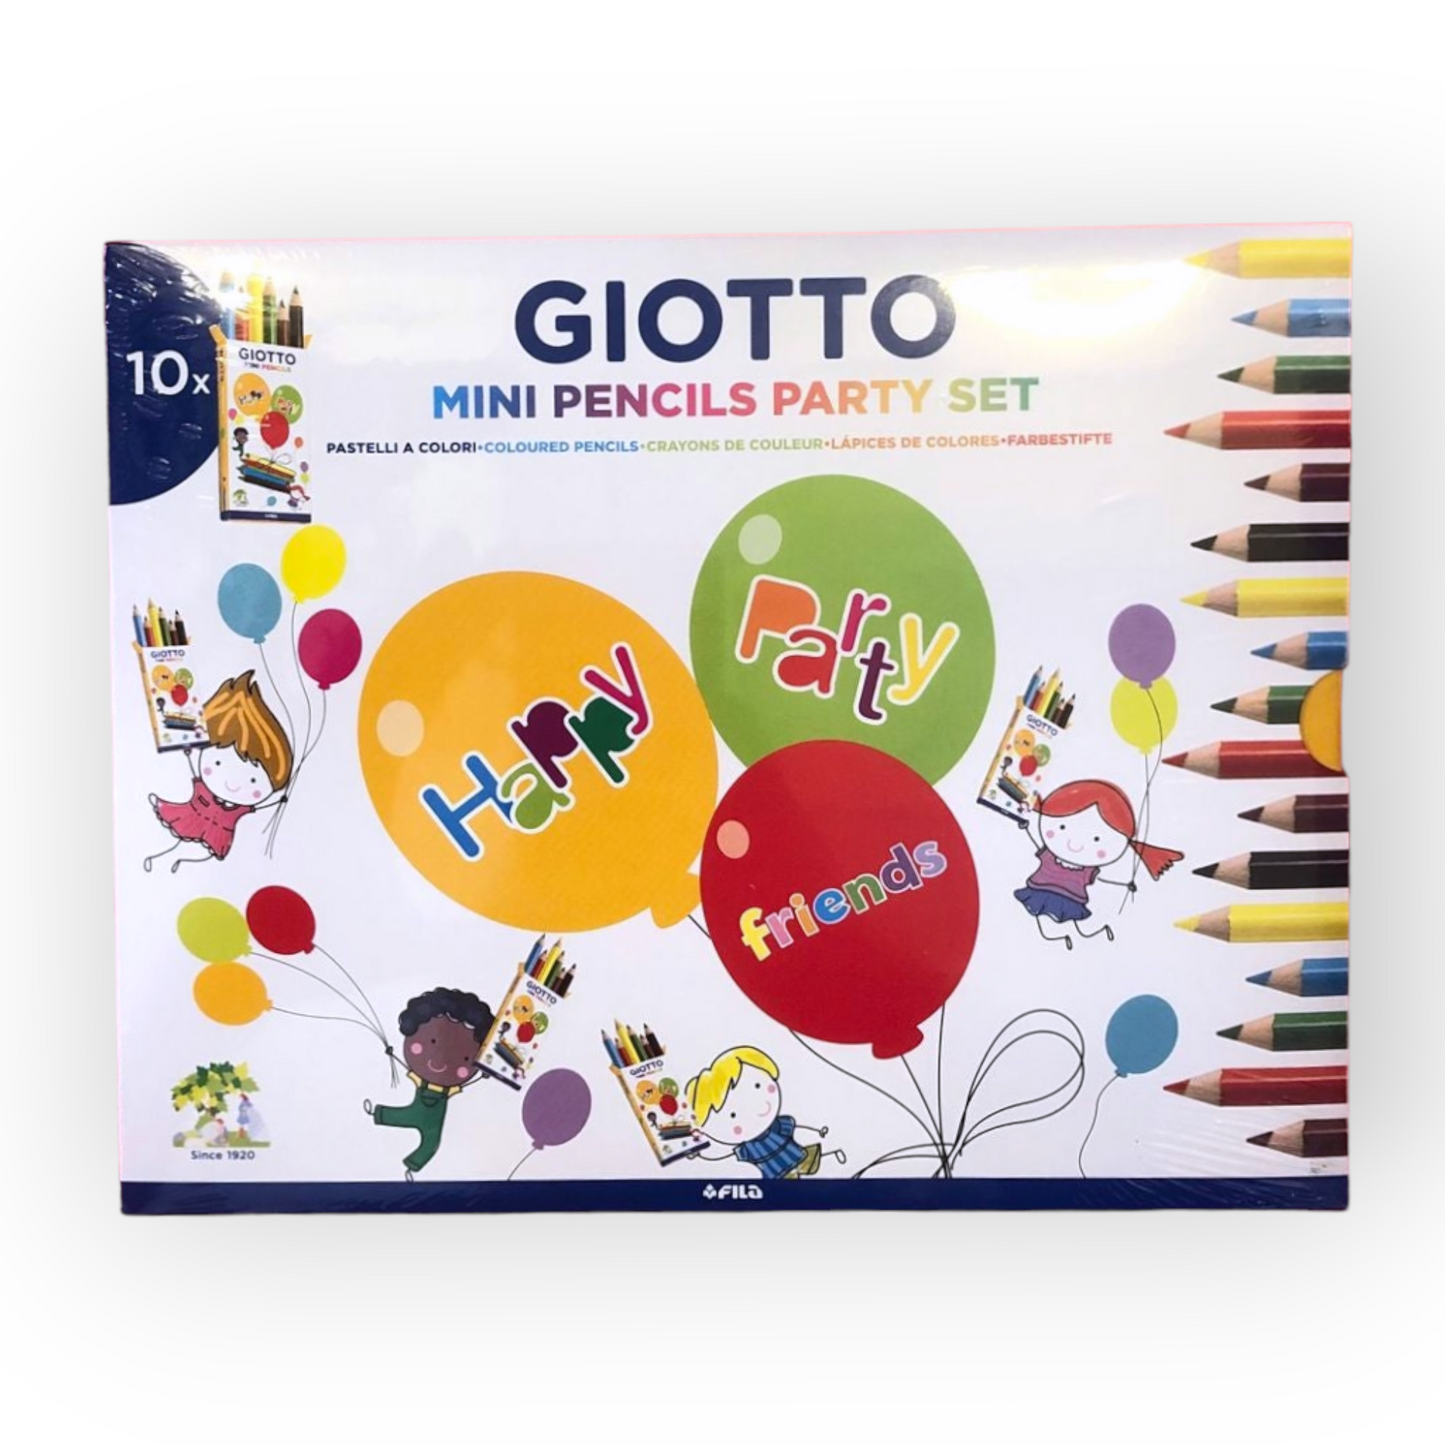 GIOTTO Mini Pencils Party Set